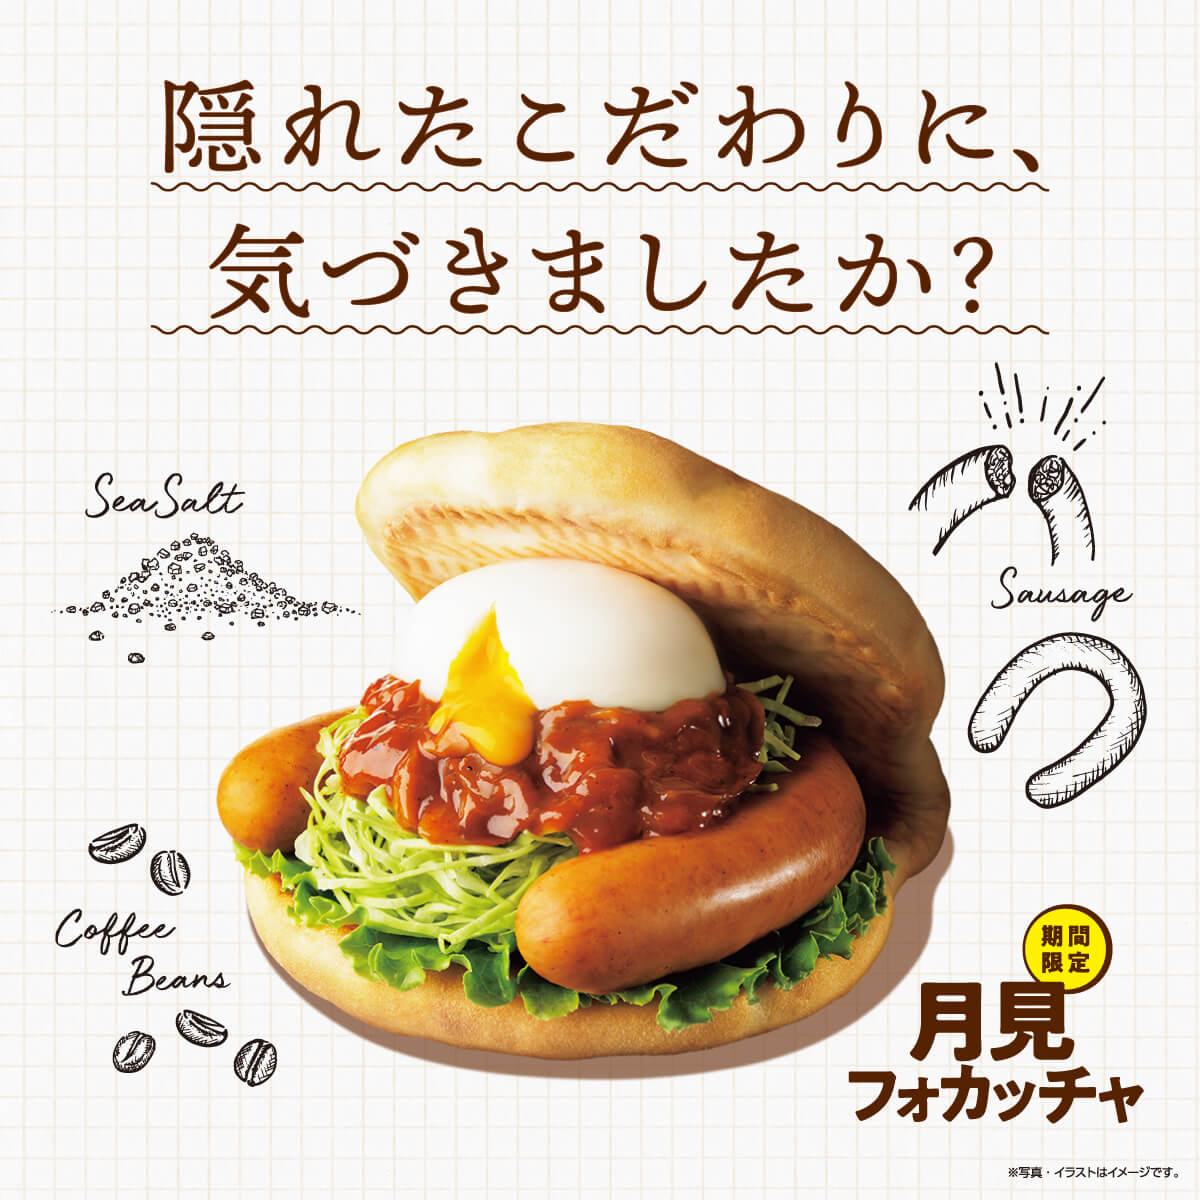 饮料 / 食品 自然 / 清新 咖啡店风格 插图 性感 剪贴Banner设计